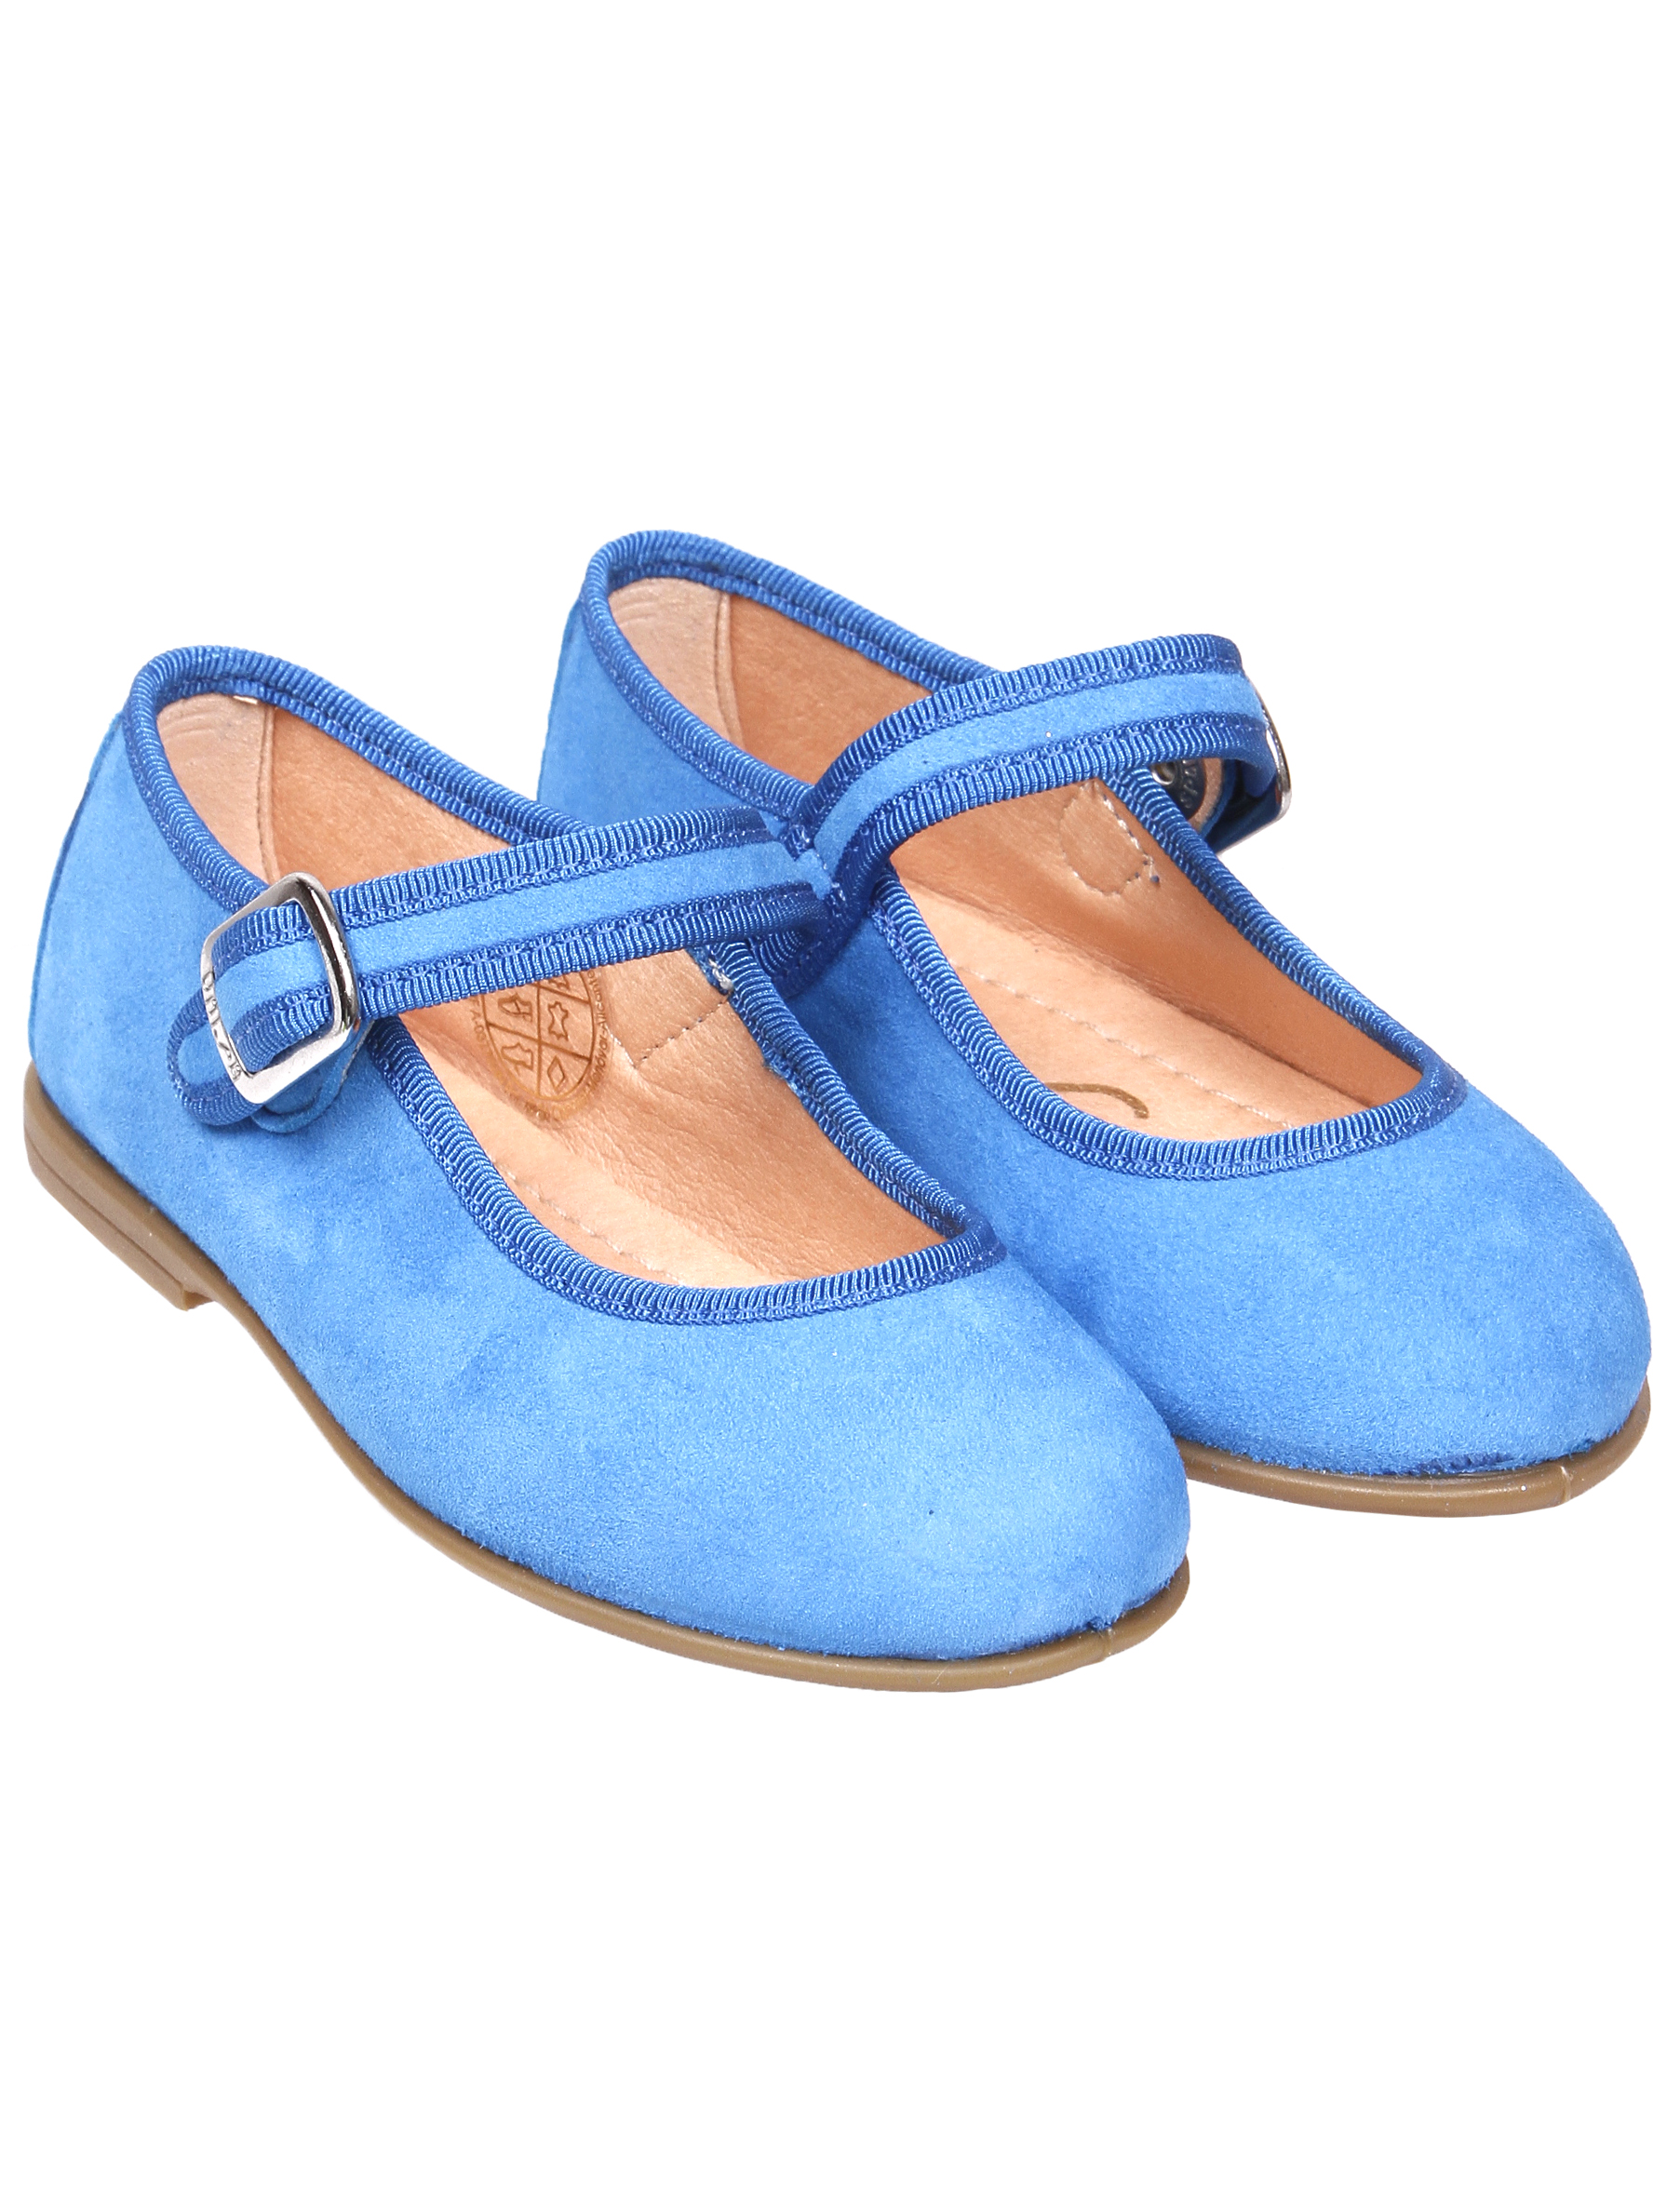 Туфли UNISA 1952860, цвет голубой, размер 28 2011509970013 - фото 1